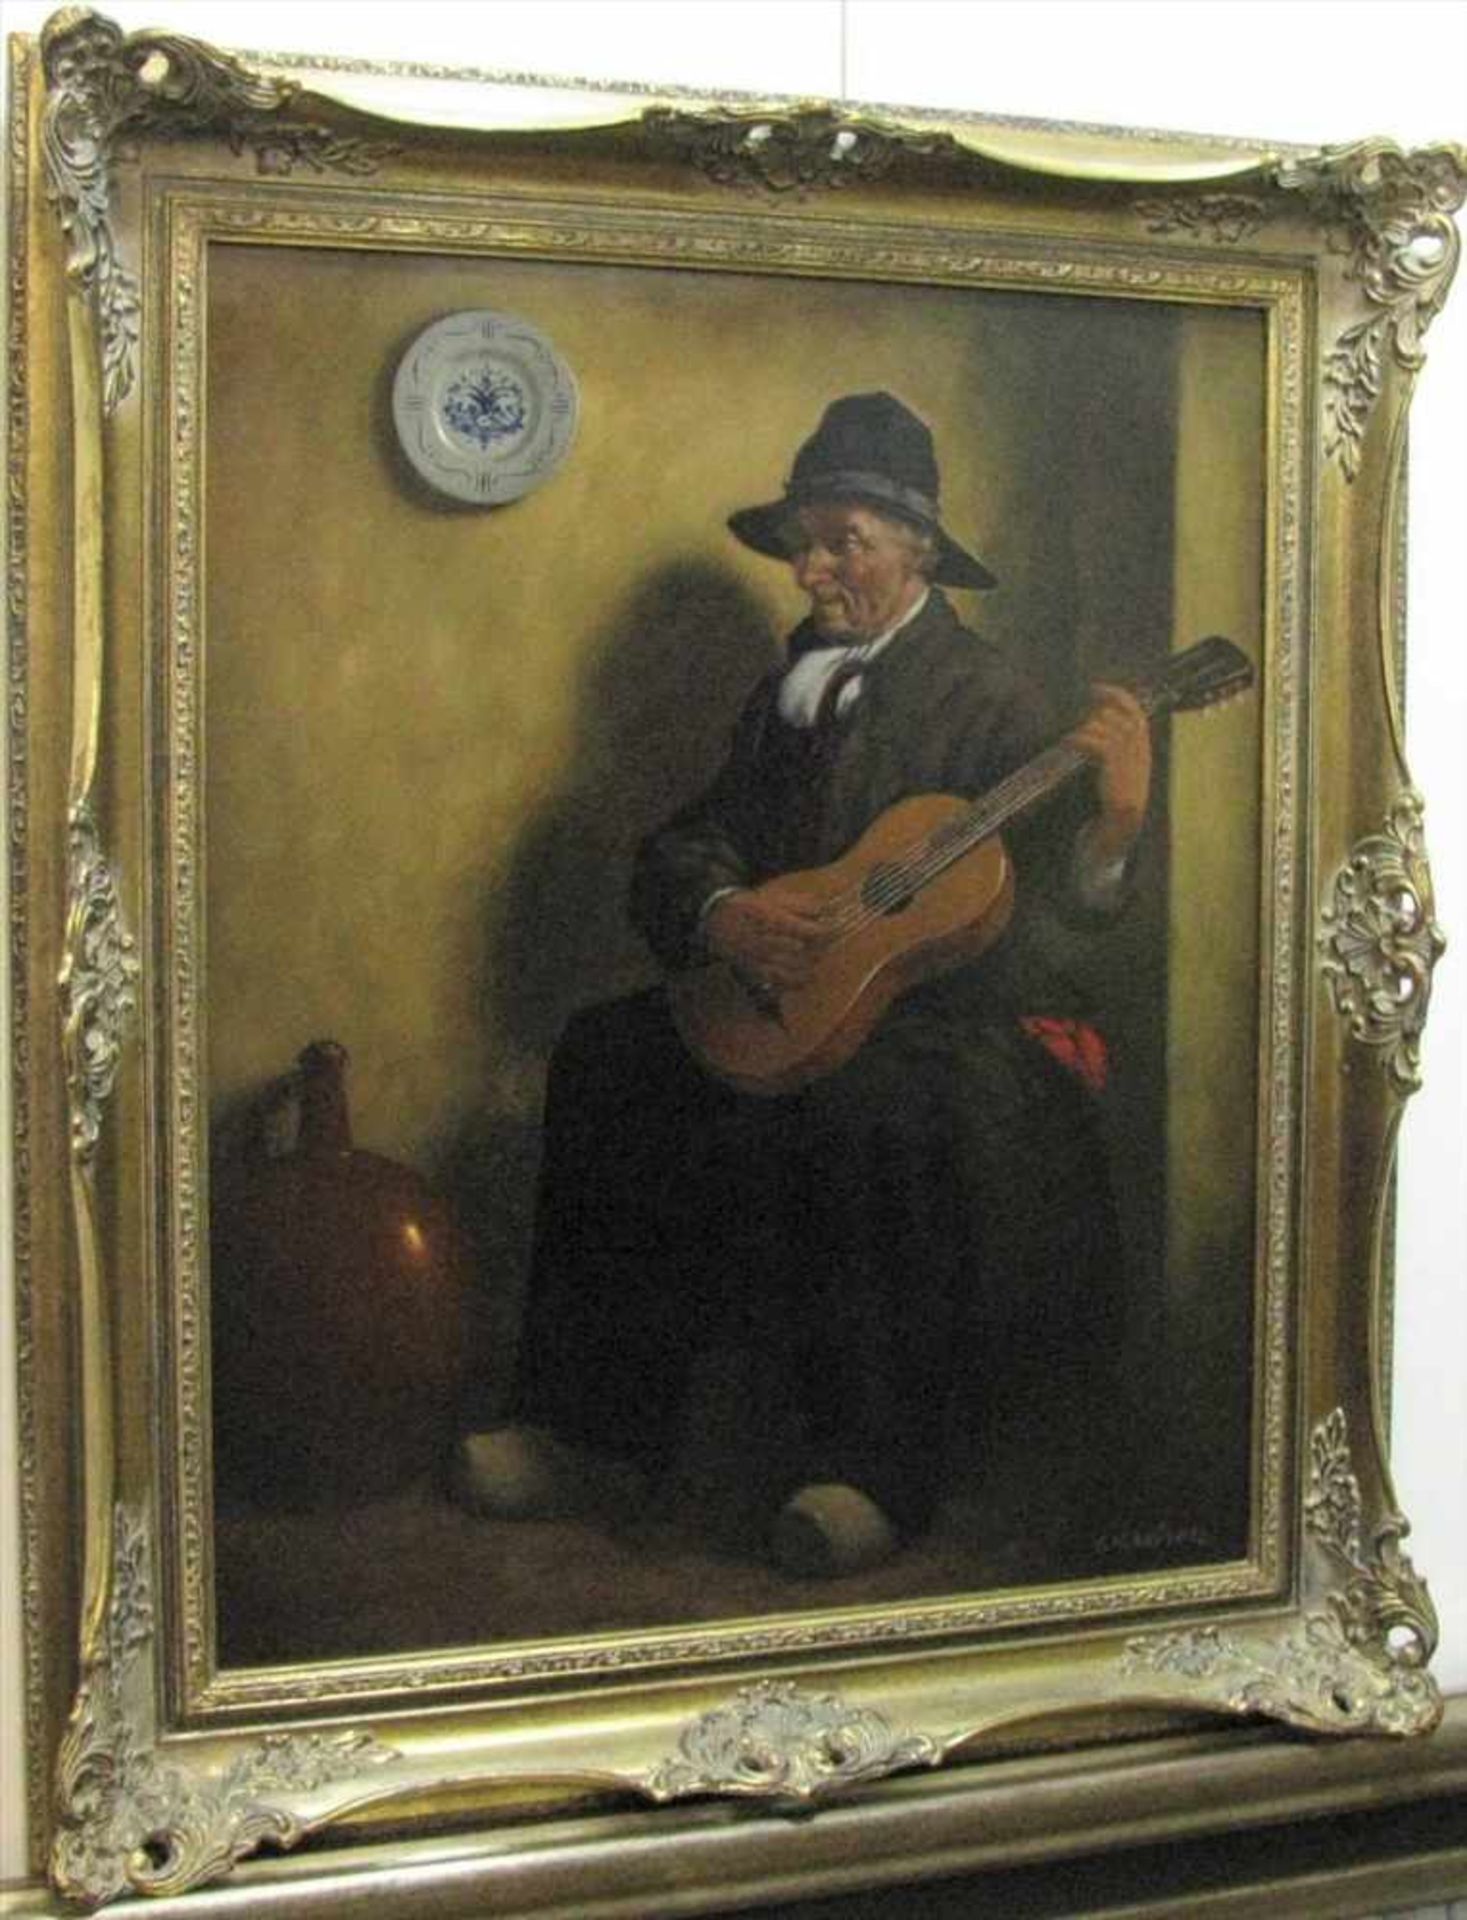 Brühne, Friedrich Heinrich, 1879 - 1949, deutscher Genremaler, "Bauer beim Gitarrespiel", re.u.